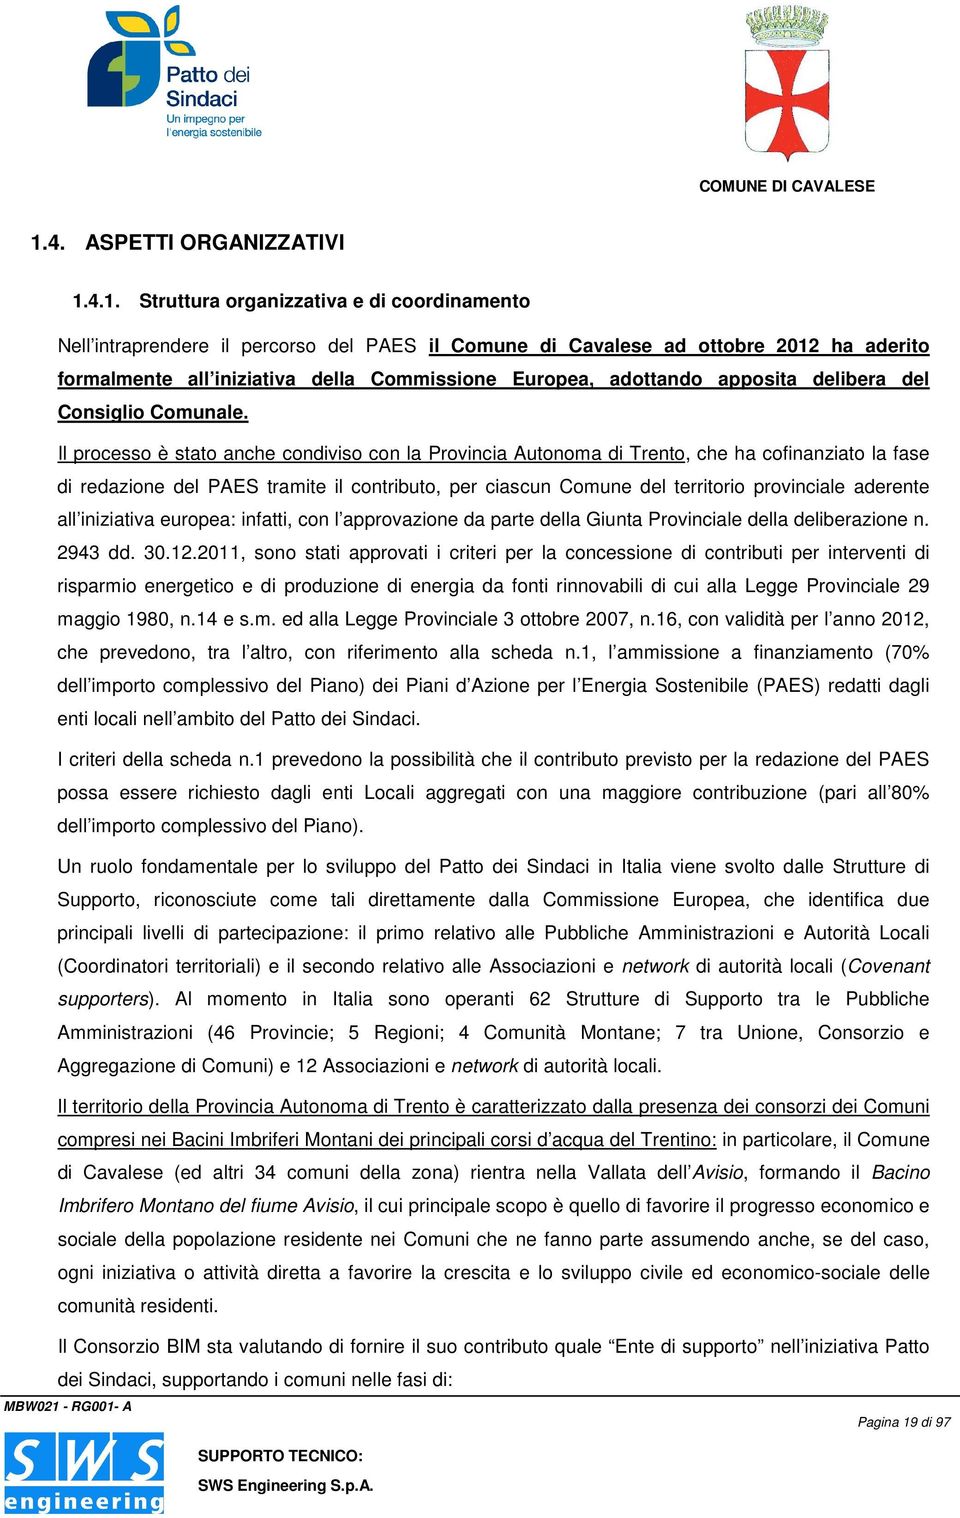 Il processo è stato anche condiviso con la Provincia Autonoma di Trento, che ha cofinanziato la fase di redazione del PAES tramite il contributo, per ciascun Comune del territorio provinciale